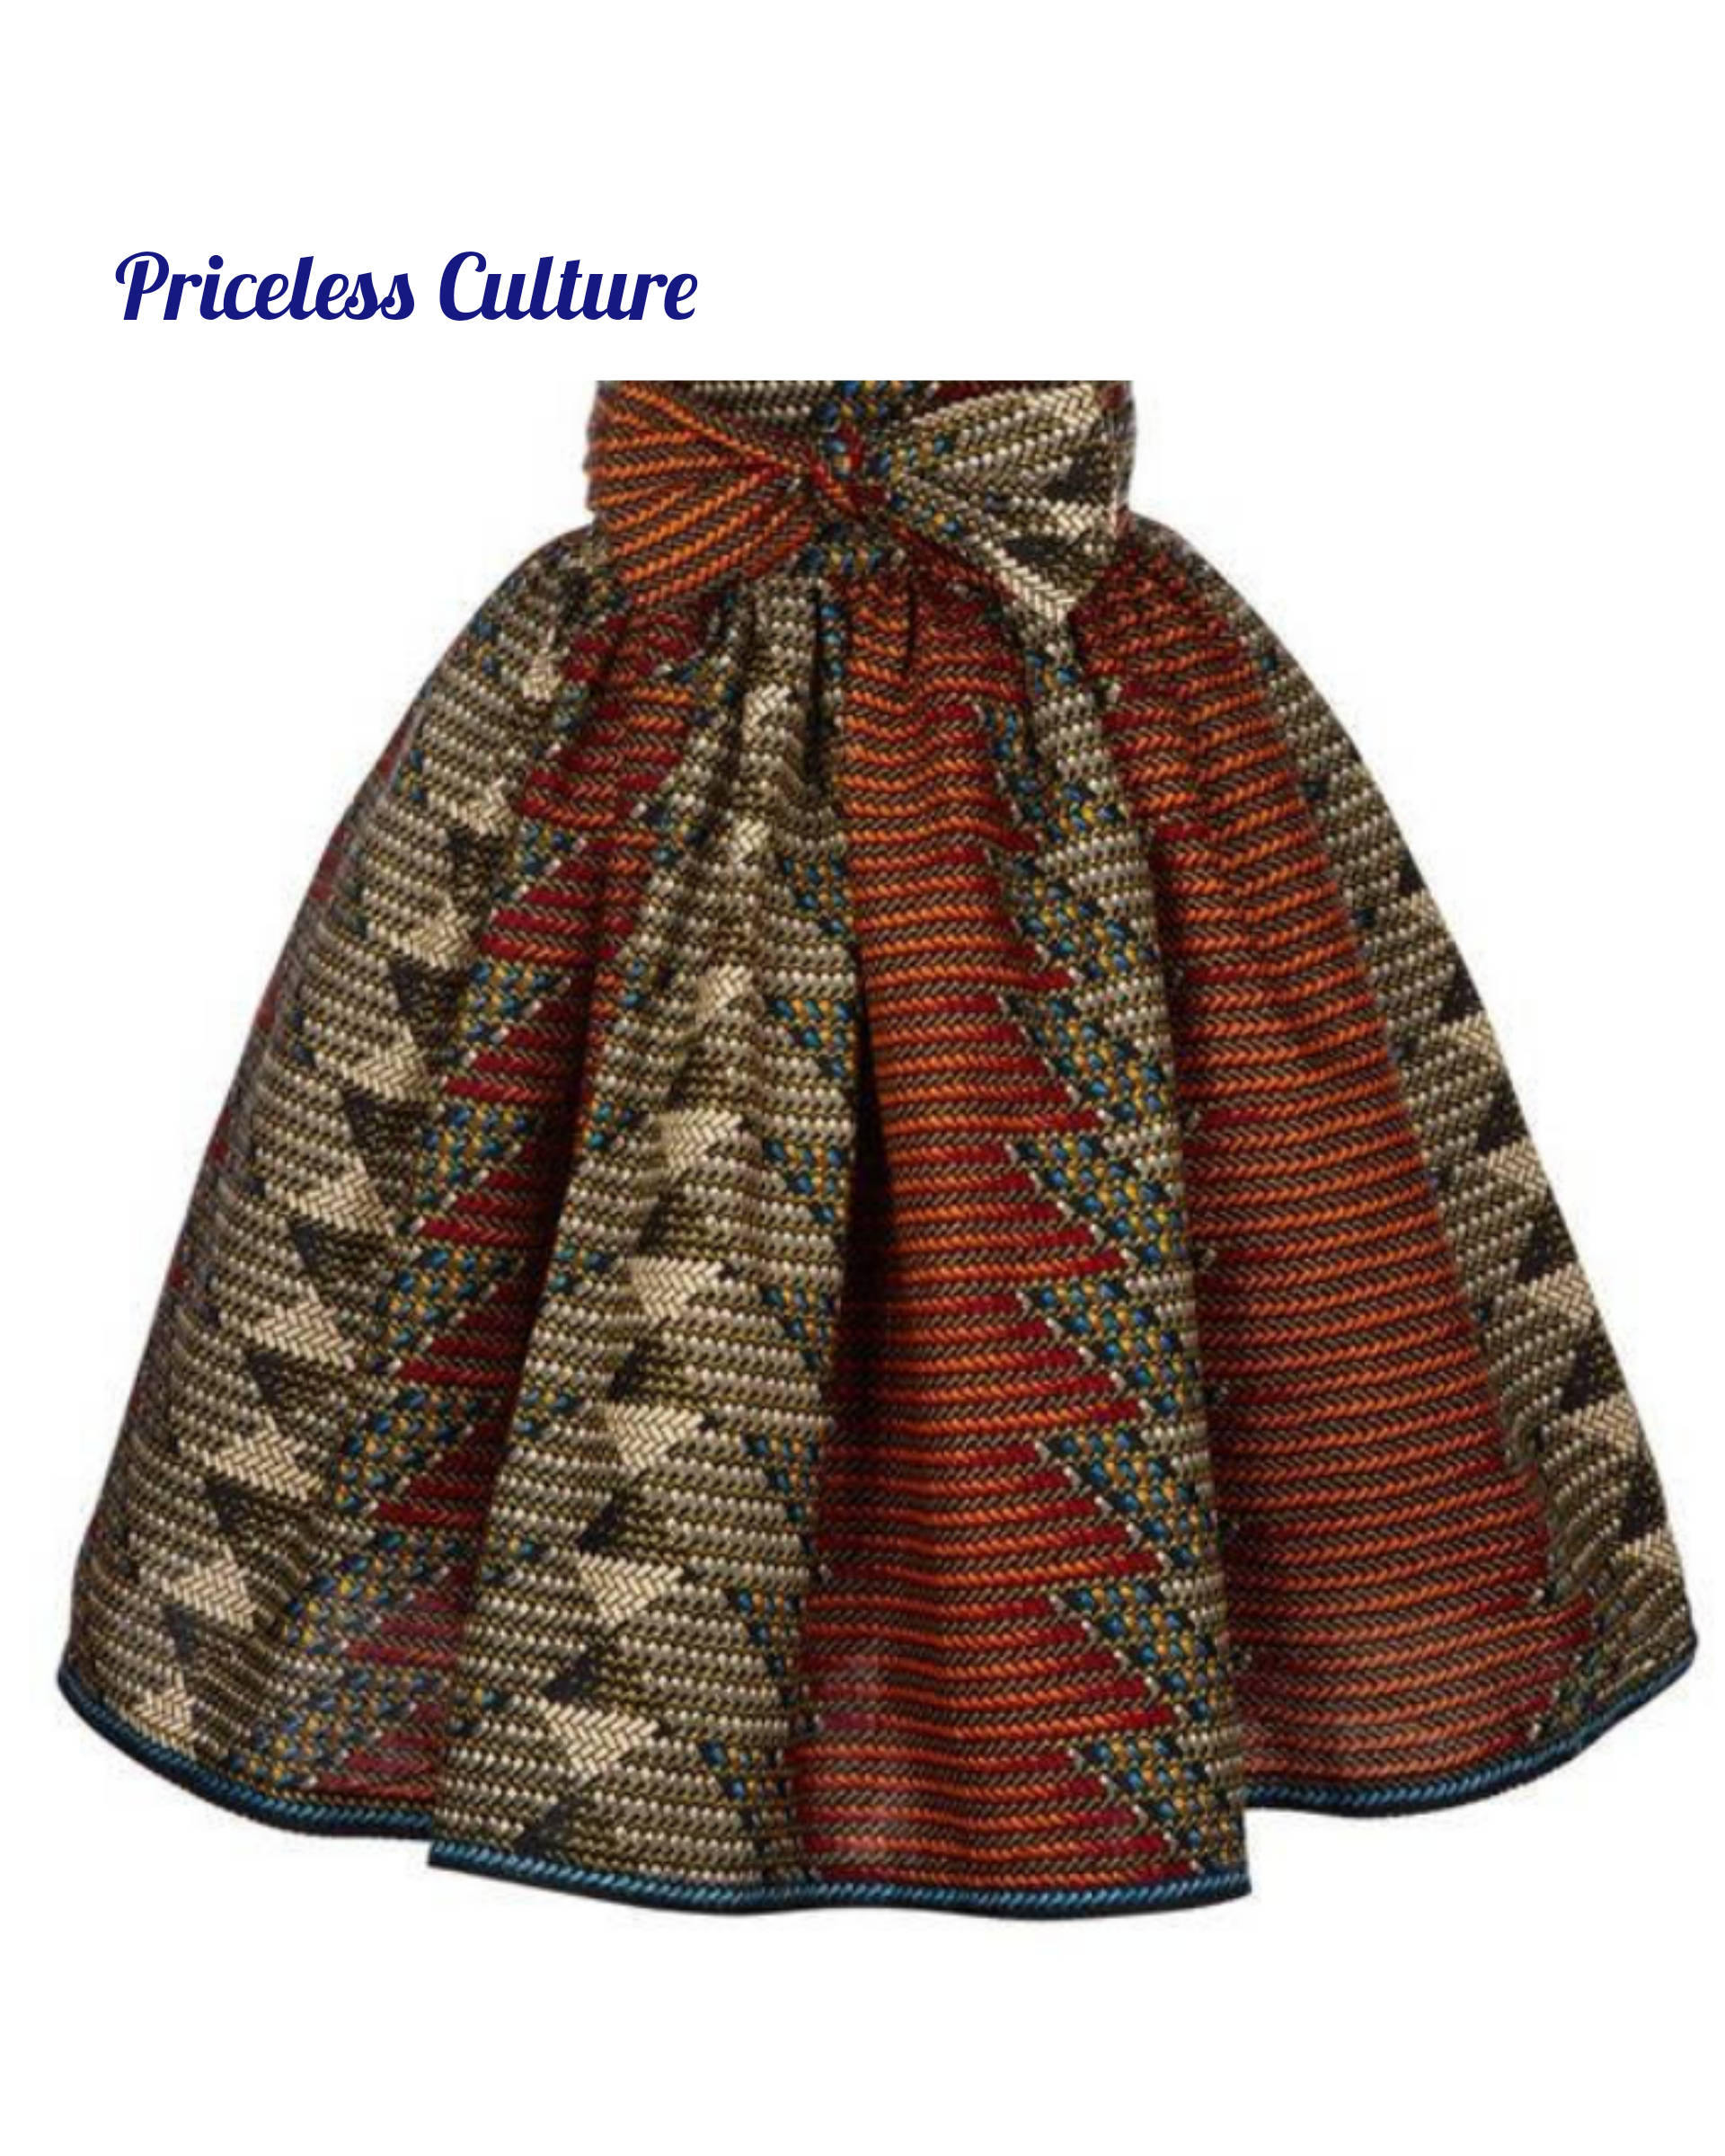 High Waisted African Print Skirt With Sash, Ankara Midi Skirt